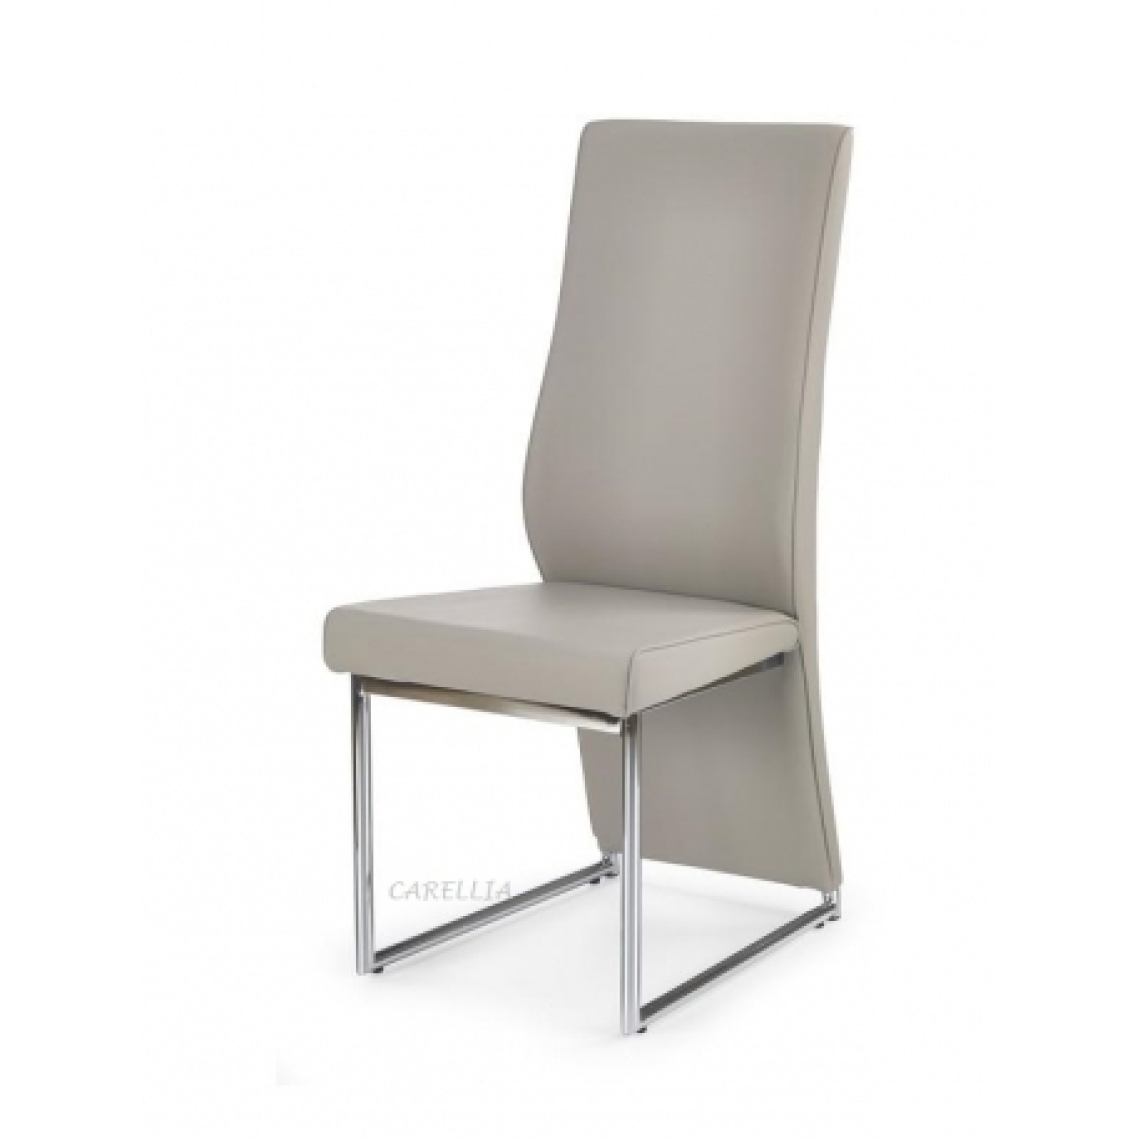 Carellia - BRIGITTE Lot de 2 chaises design - Cappucino - Chaises